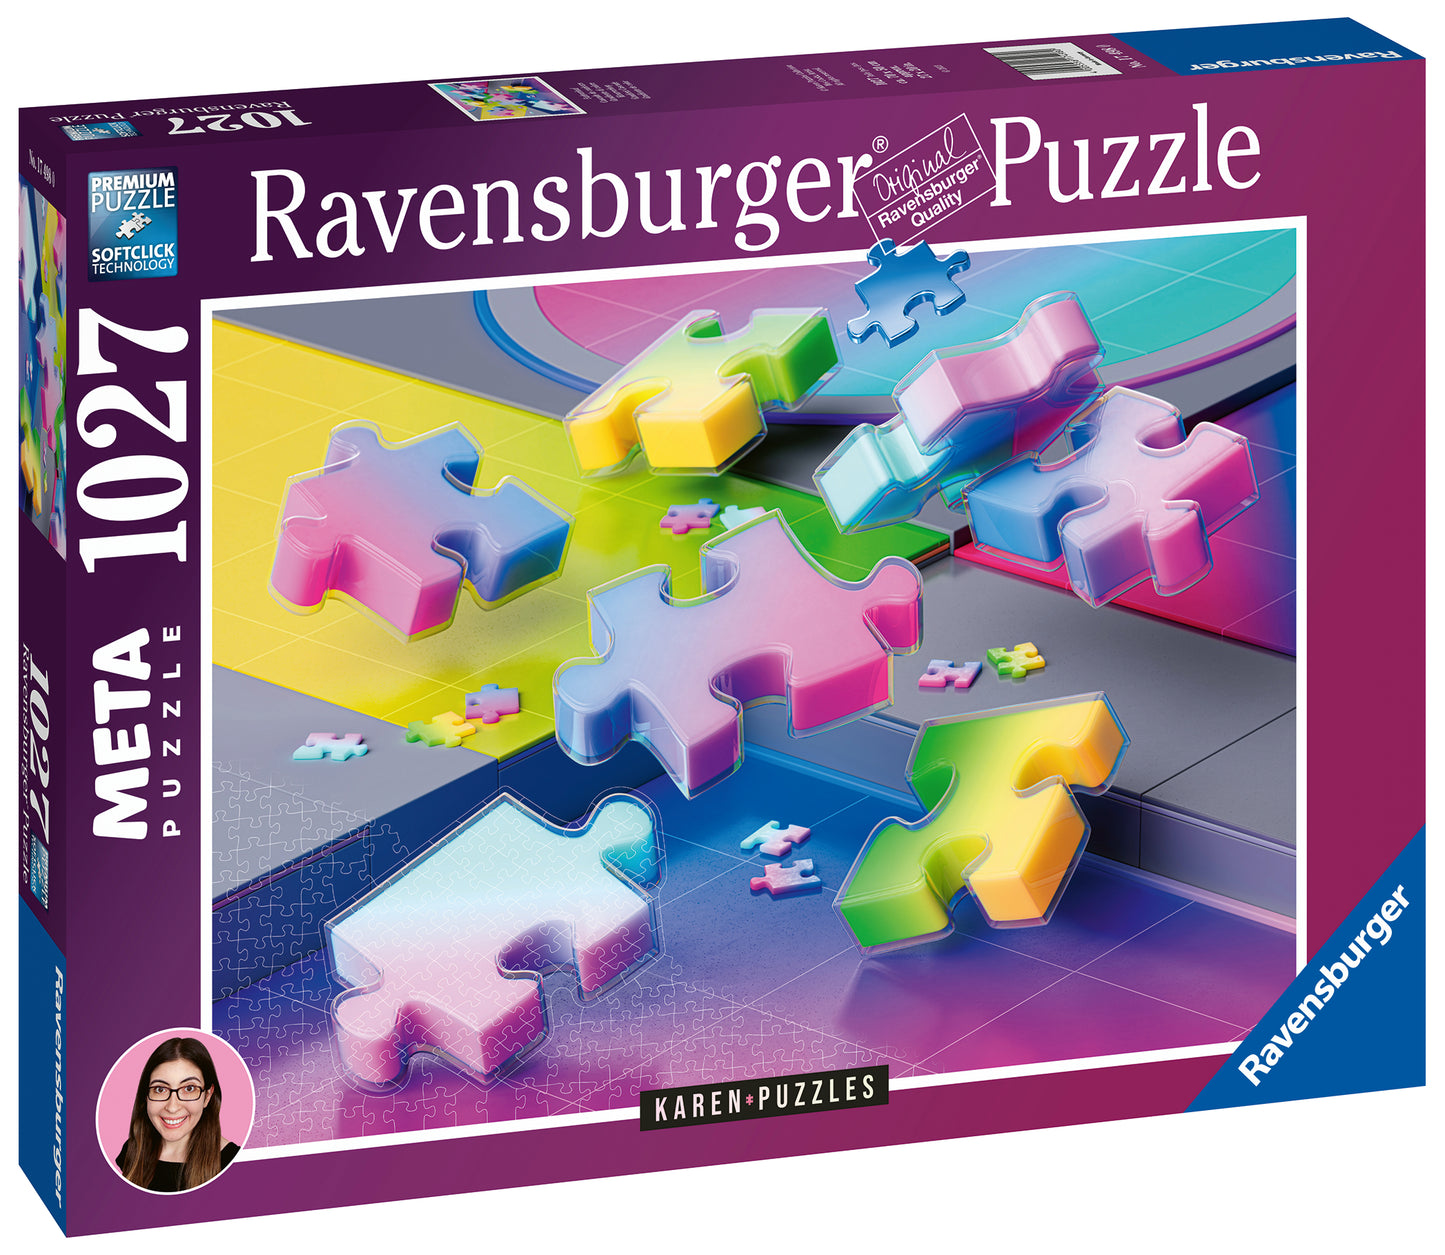 *** Pre-Order *** Ravensburger - Karen Puzzles - 1027 Piece Jigsaw Puzzle